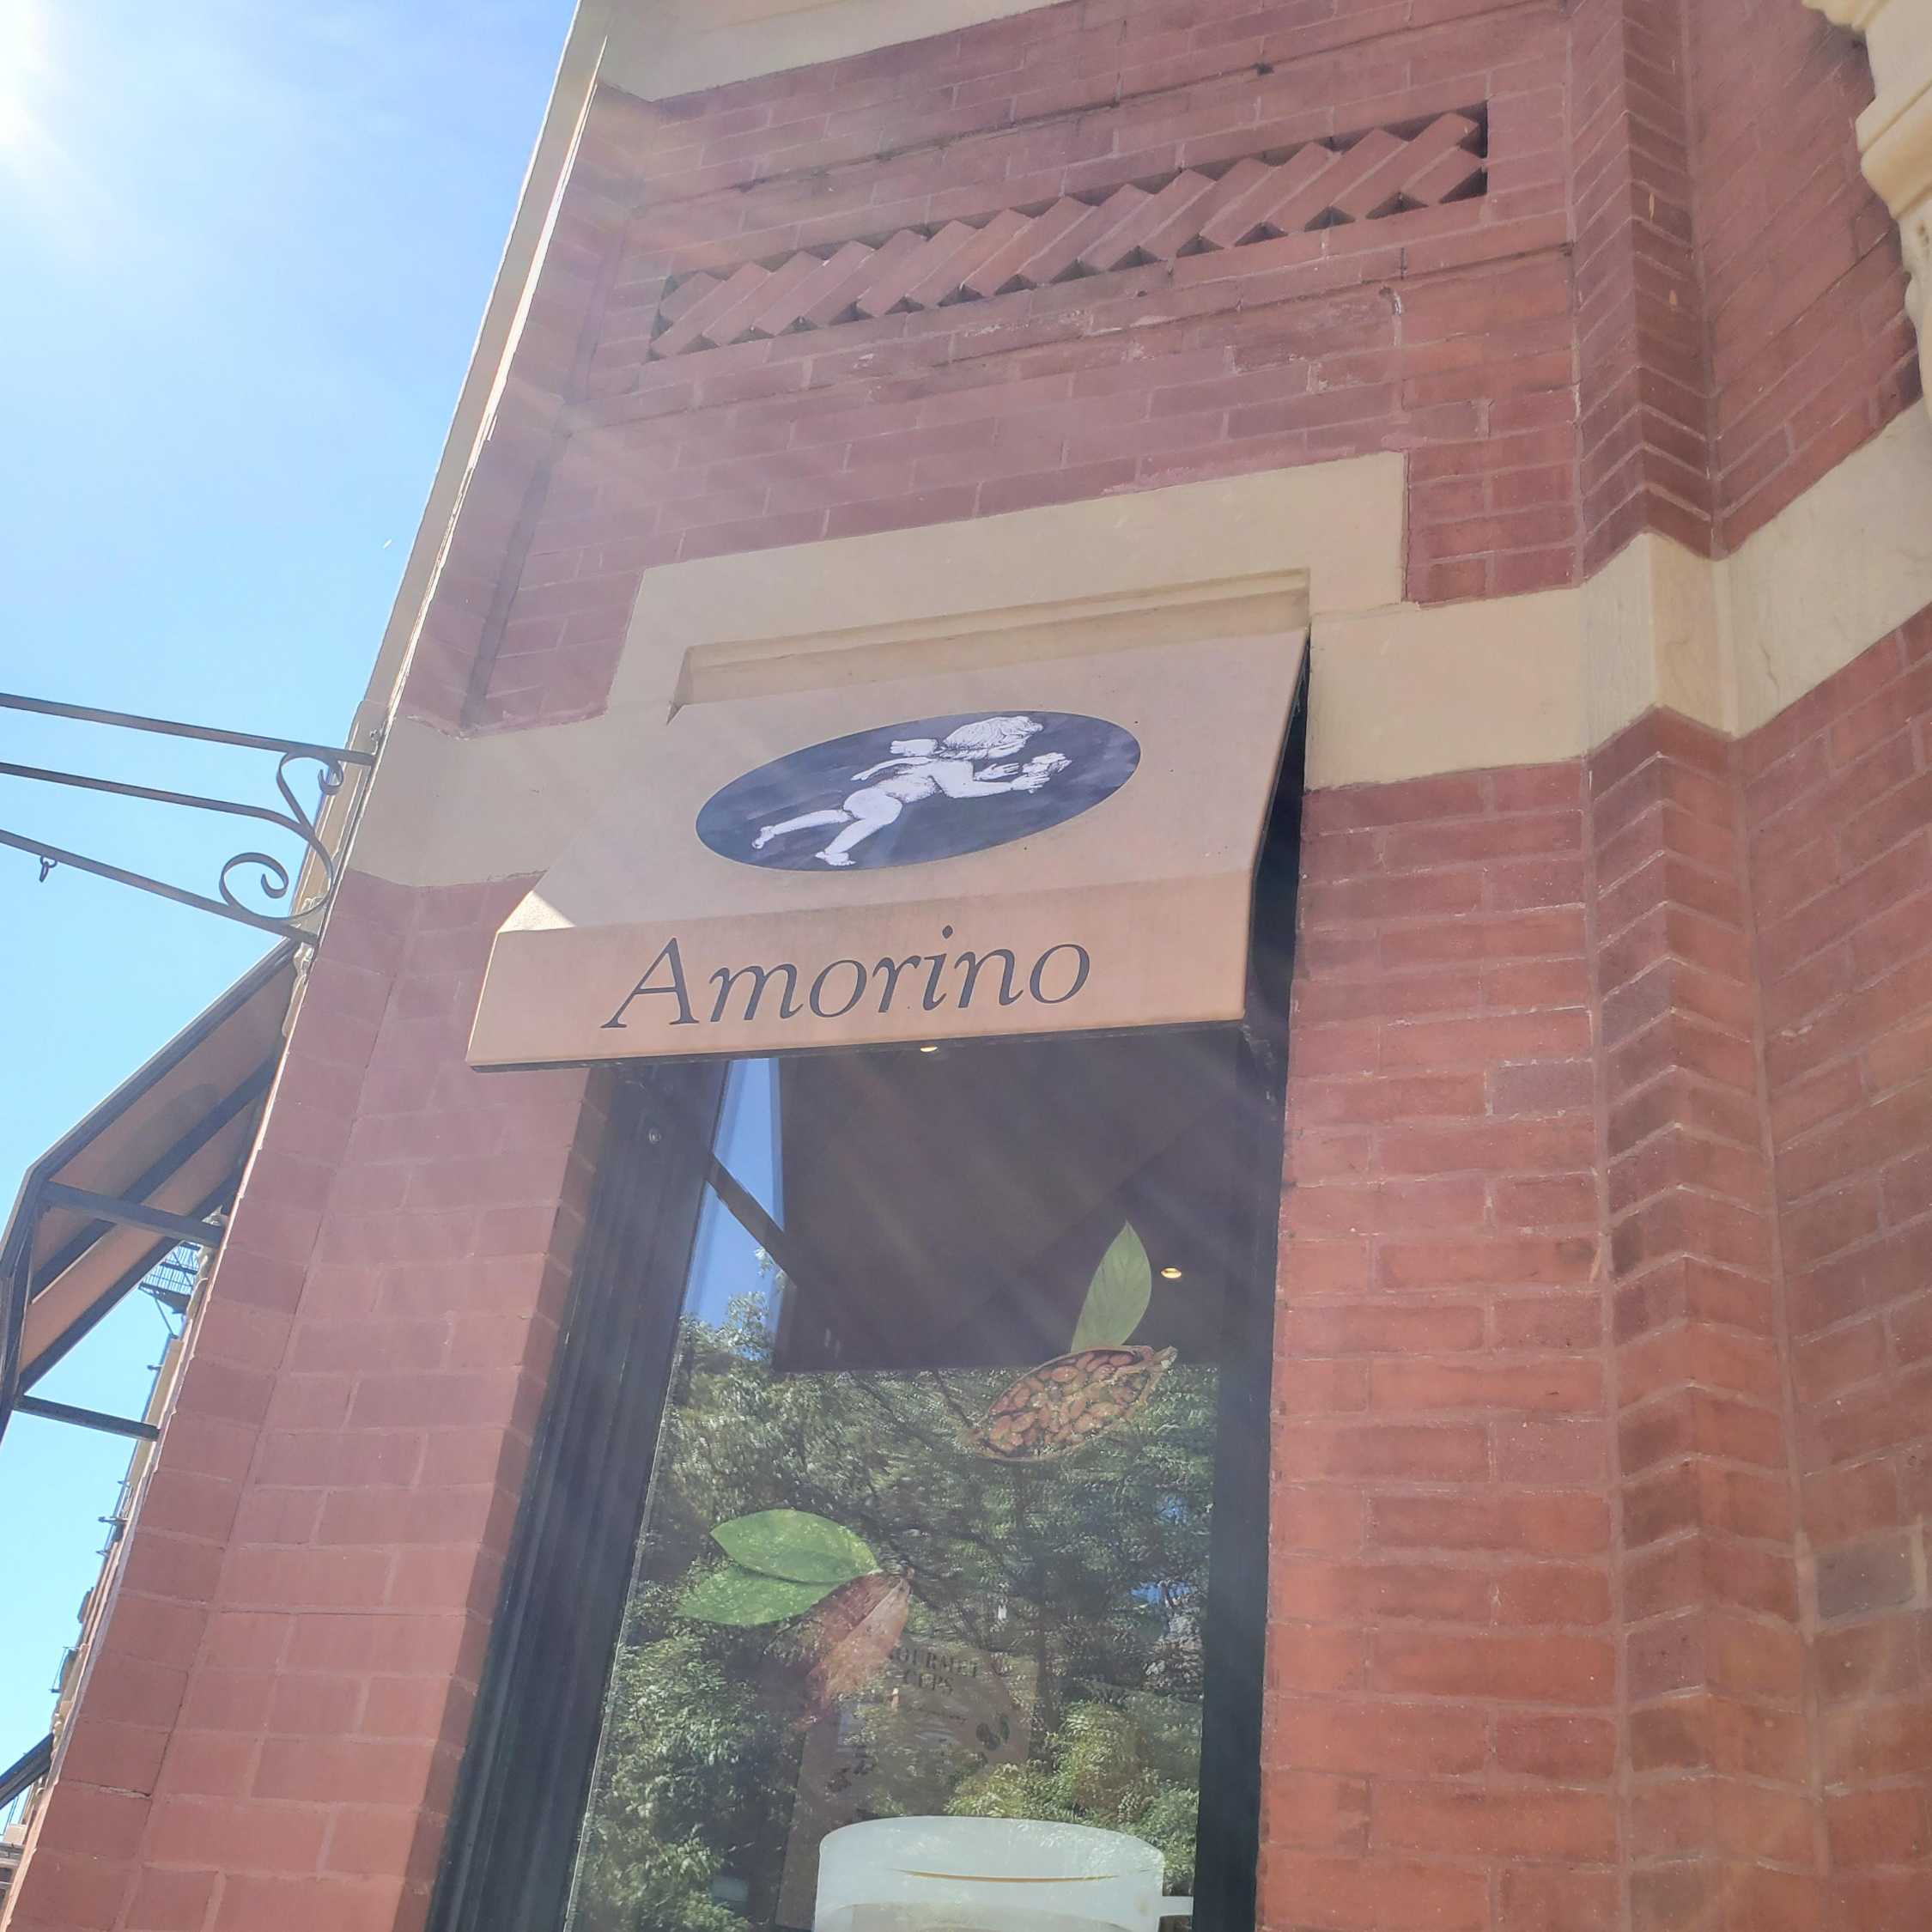 벡베이 스트릿에 있던 amorino 알모리노 젤라또 가게 입구에서 찍었습니다.